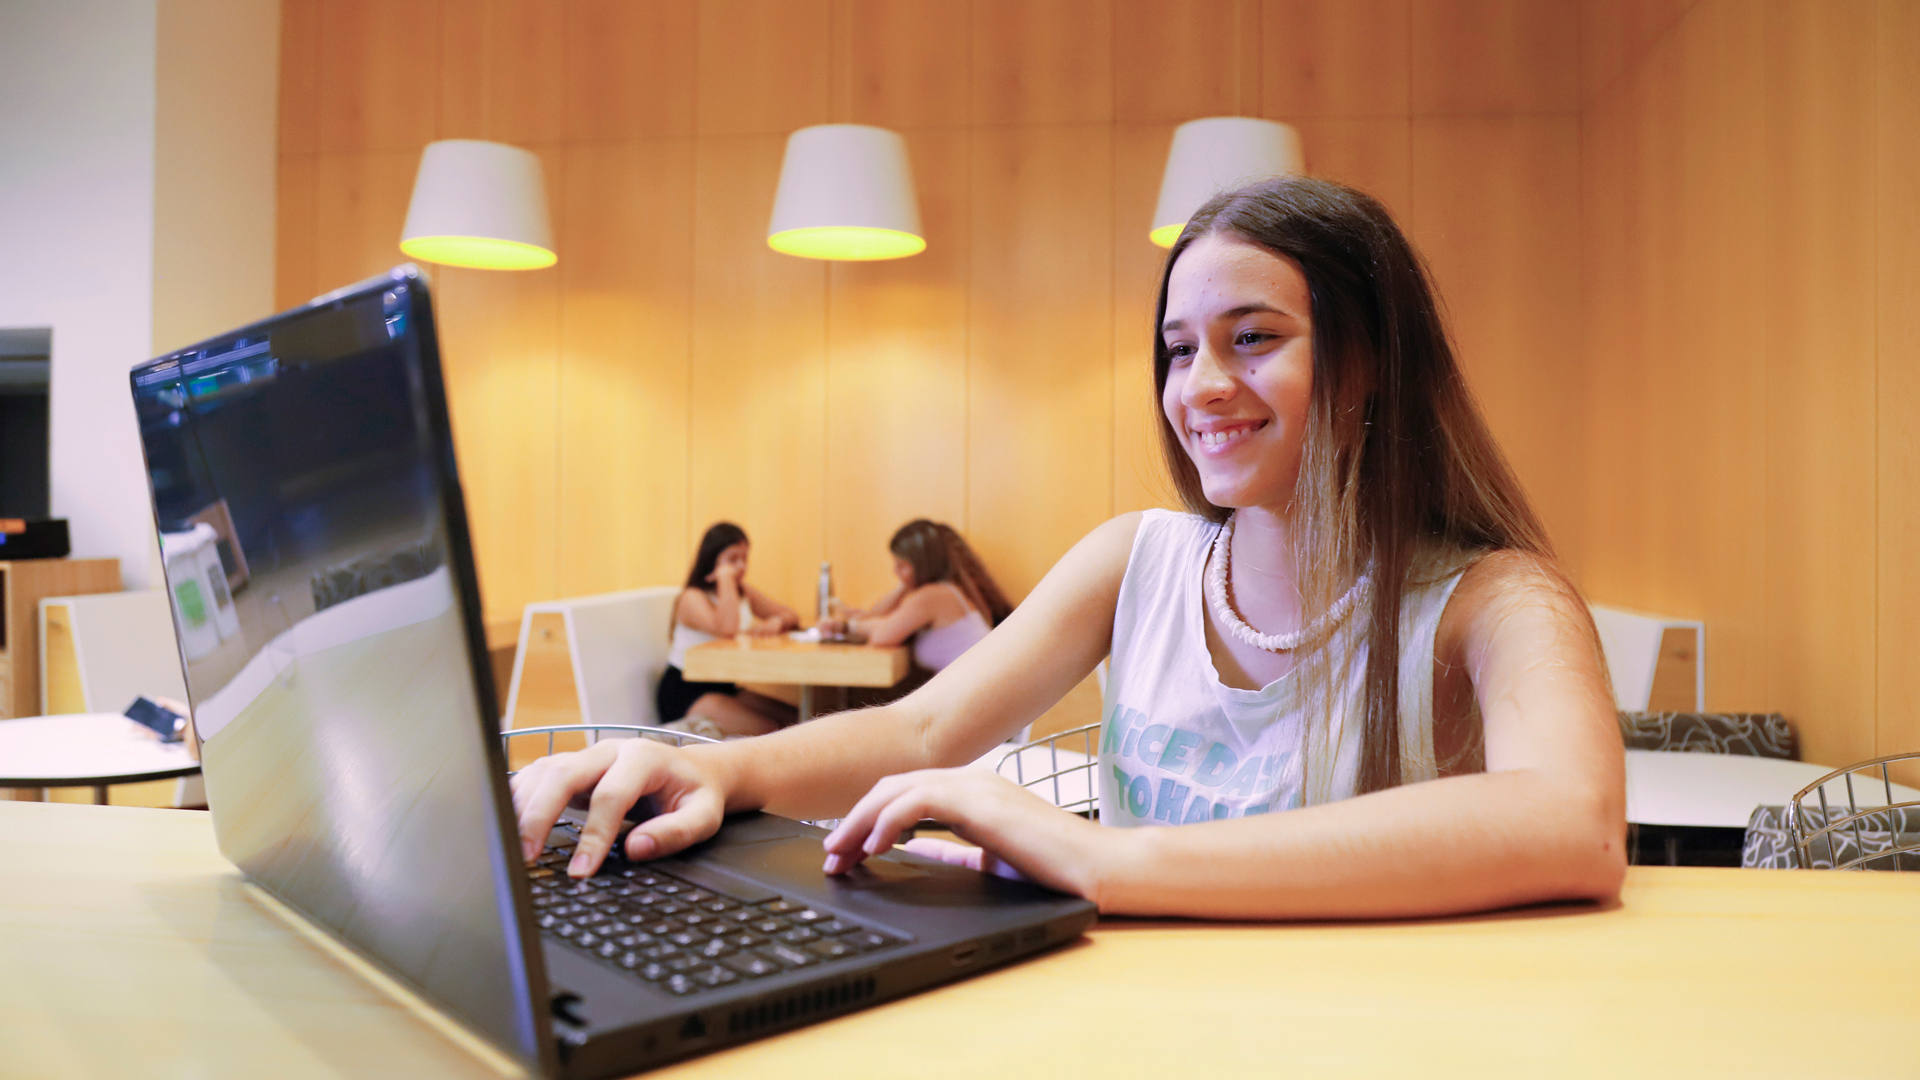 Educación a distancia: una empresa ofrece cursos gratuitos para chicas y adolescentes